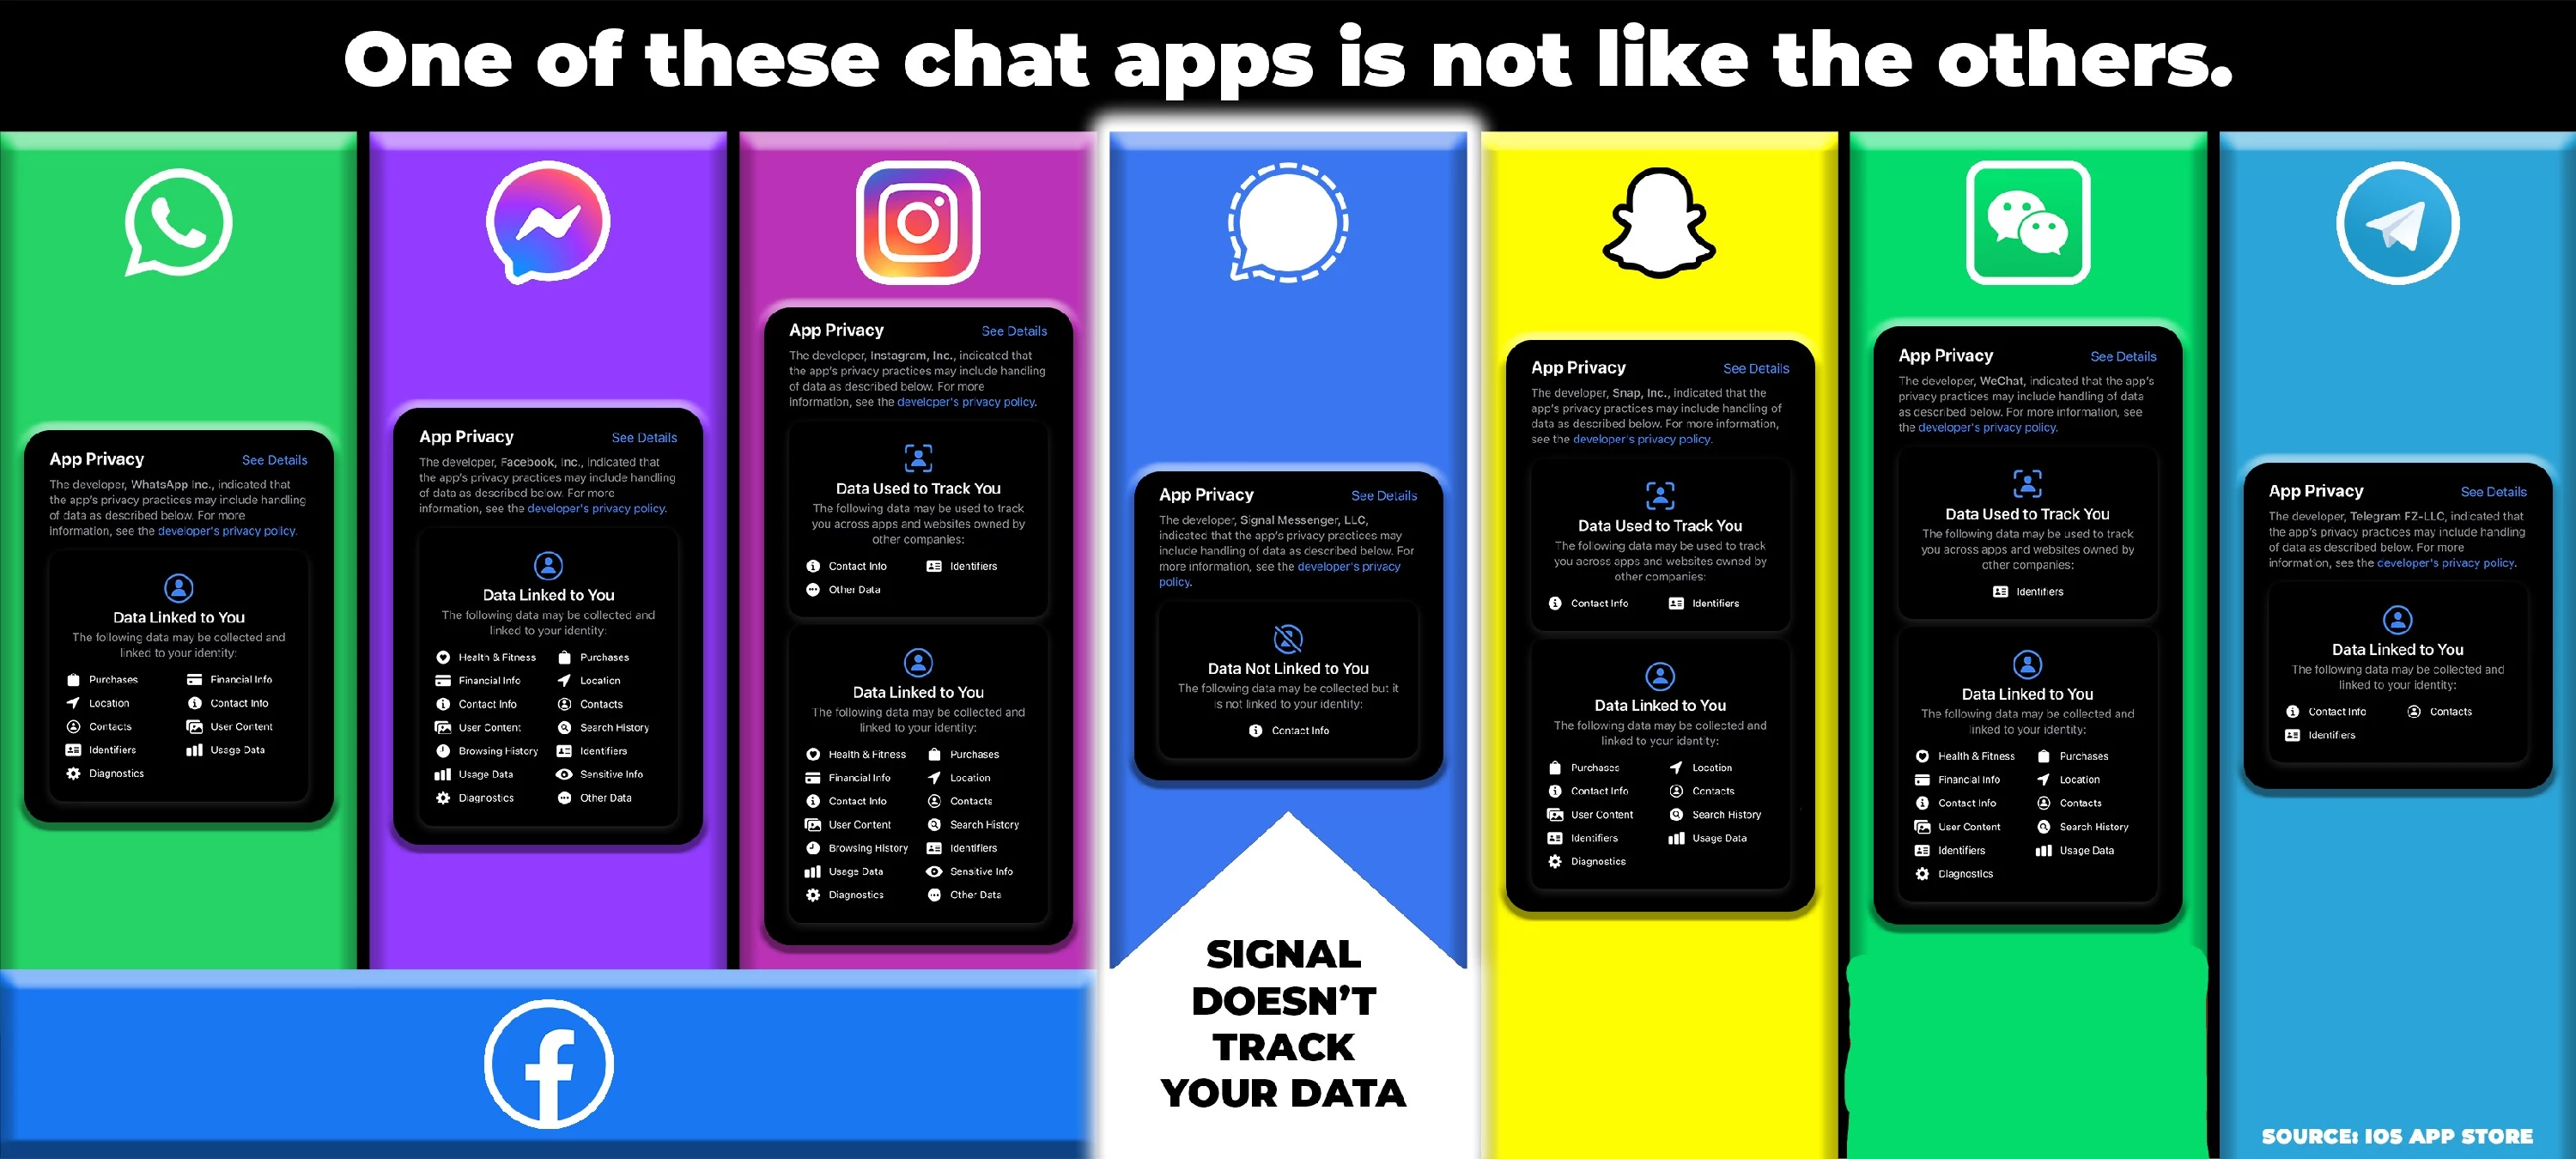 Pictogram: WhatsApp vs FB Messenger vs Instagram vs Signal vs Snapchat vs WeChat vs Telegram